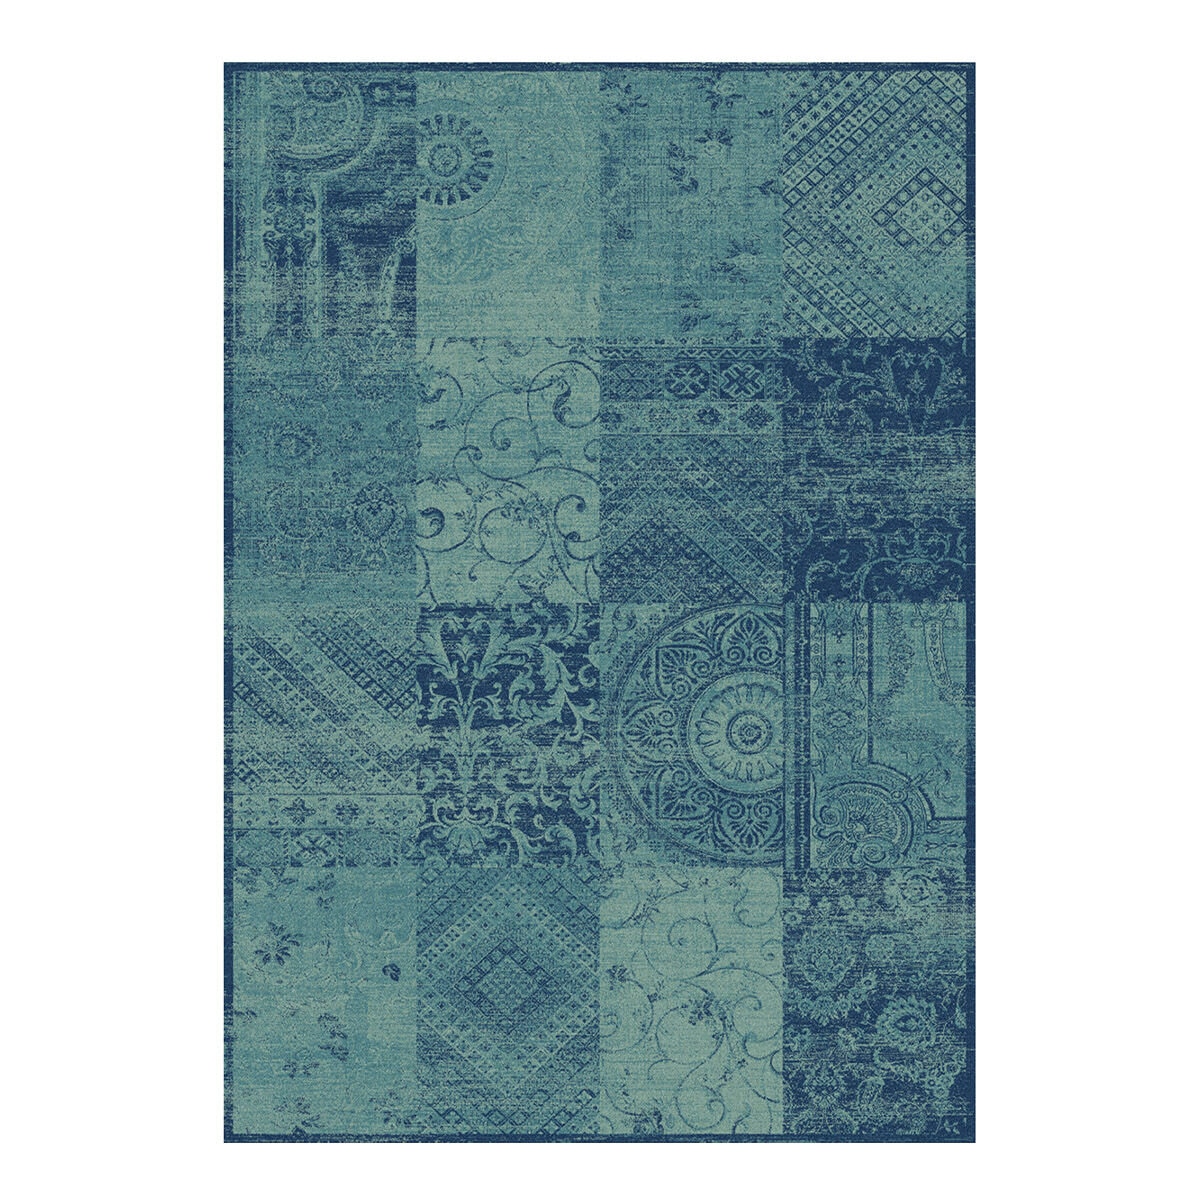 波普輕柔現代比利時進口絲質地毯 160公分 X 230公分